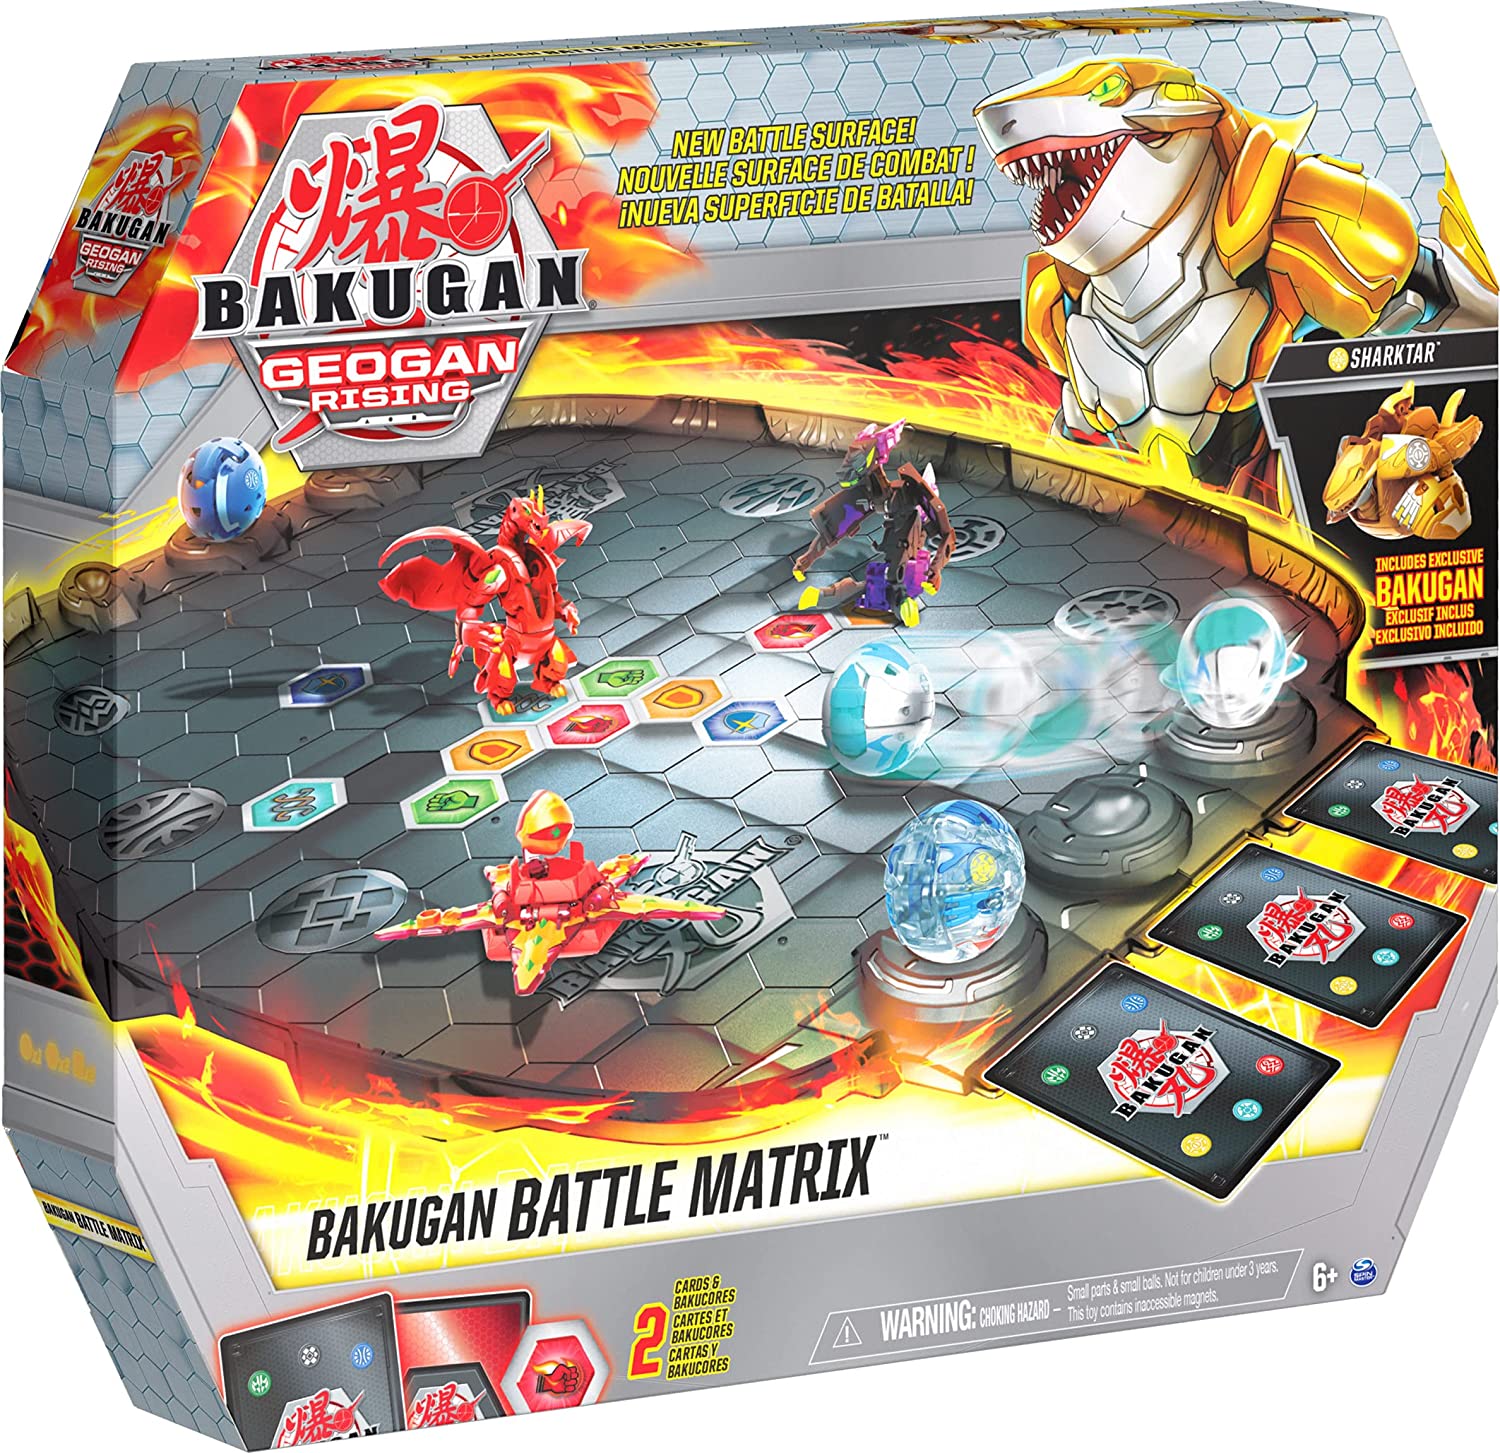 Battle Matrix Bakugan arena season 3